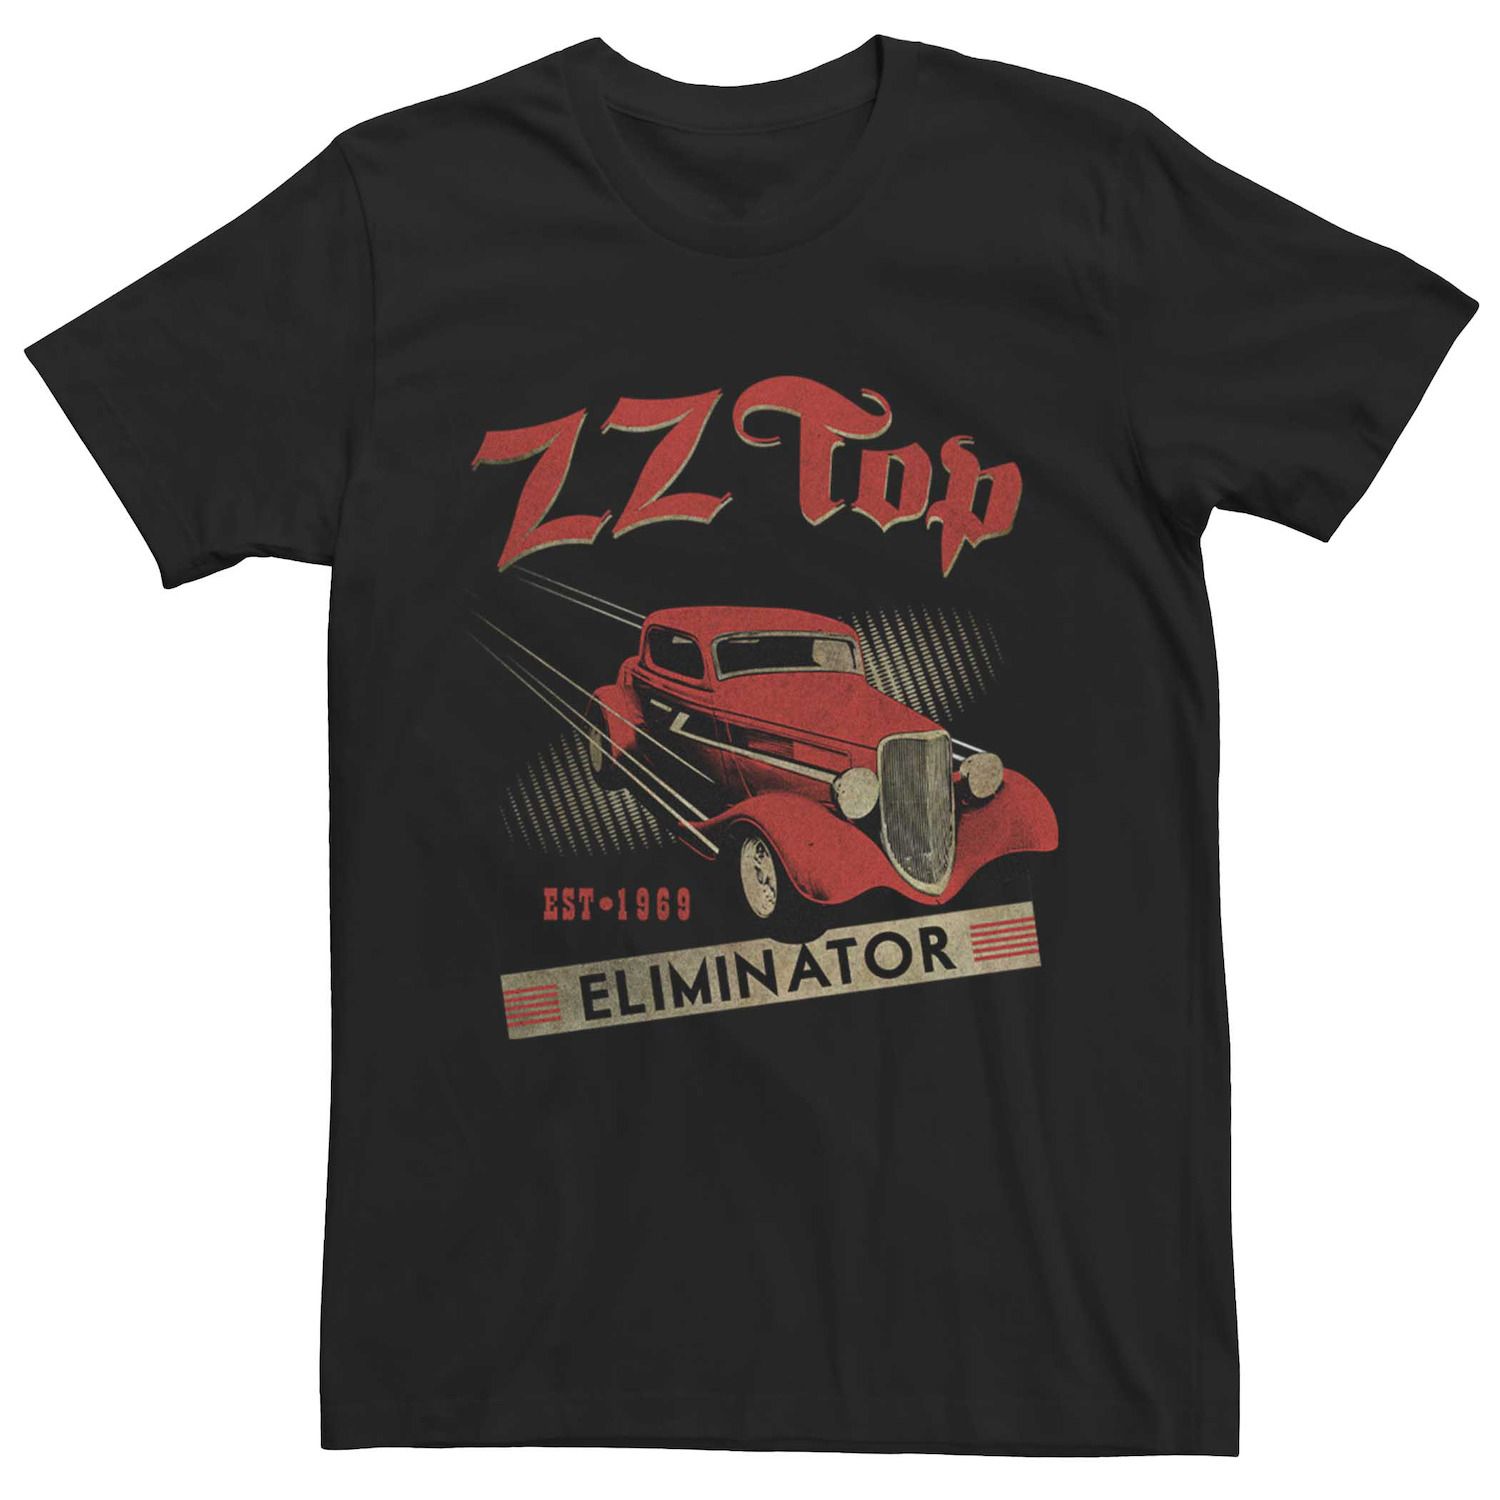 Мужская винтажная футболка с портретом ZZ Top Eliminator Hot Rod Licensed Character, черный